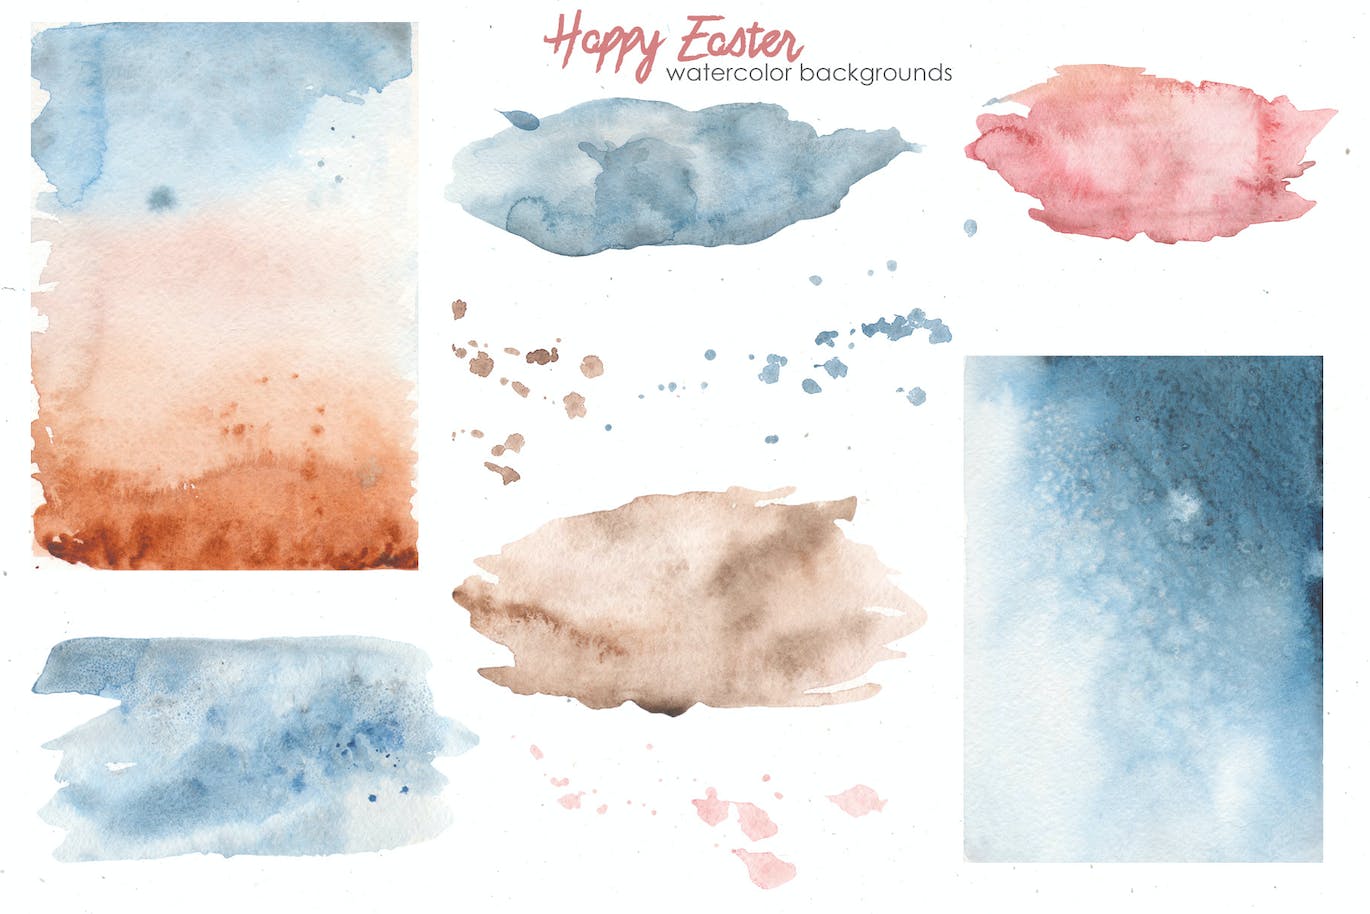 复活节快乐元素水彩画集 Happy Easter watercolor-13